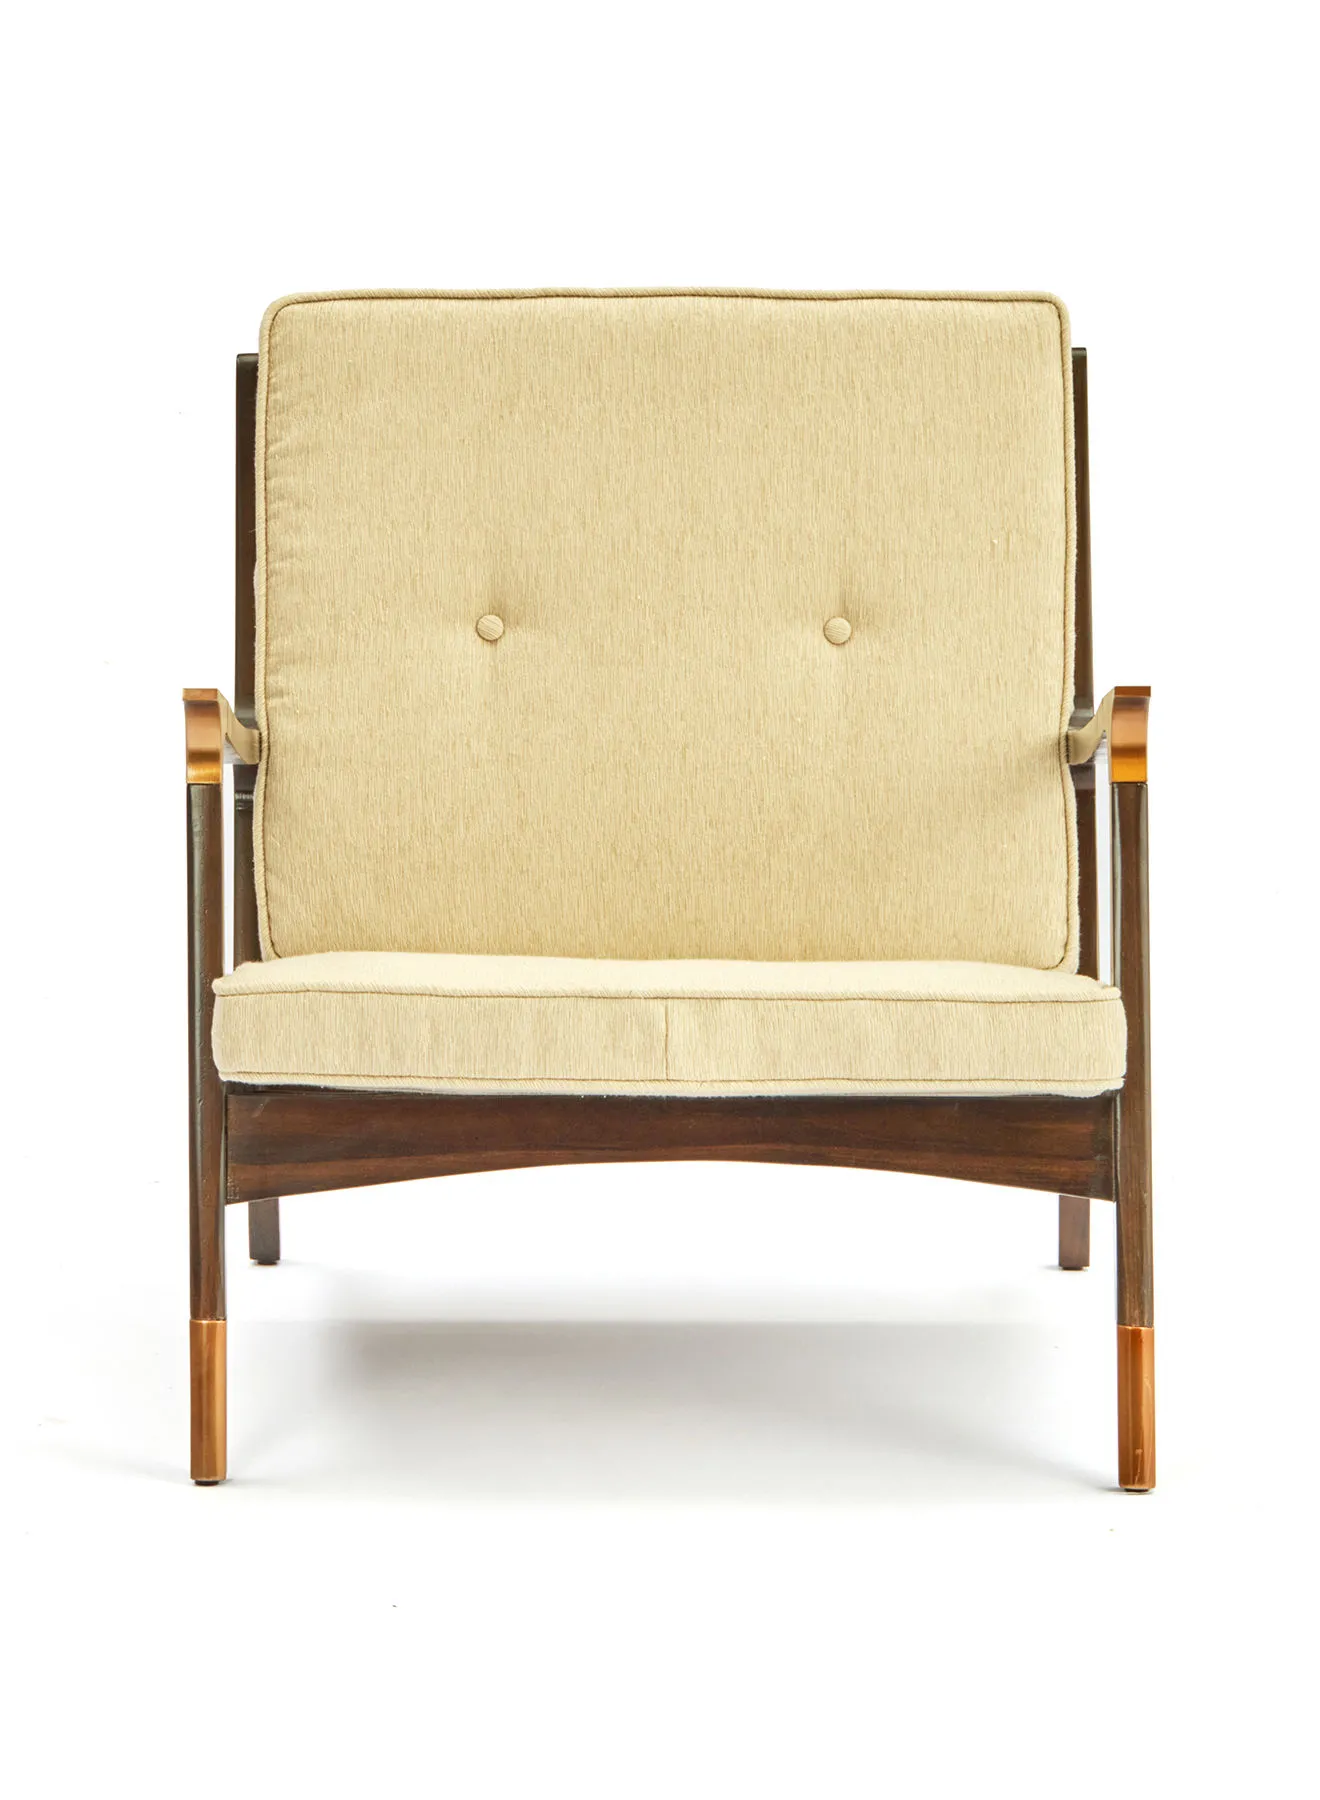 ebb & flow Armchair Luxurious - In Dark Brown Wooden Chair Size 700 X 840 X 760